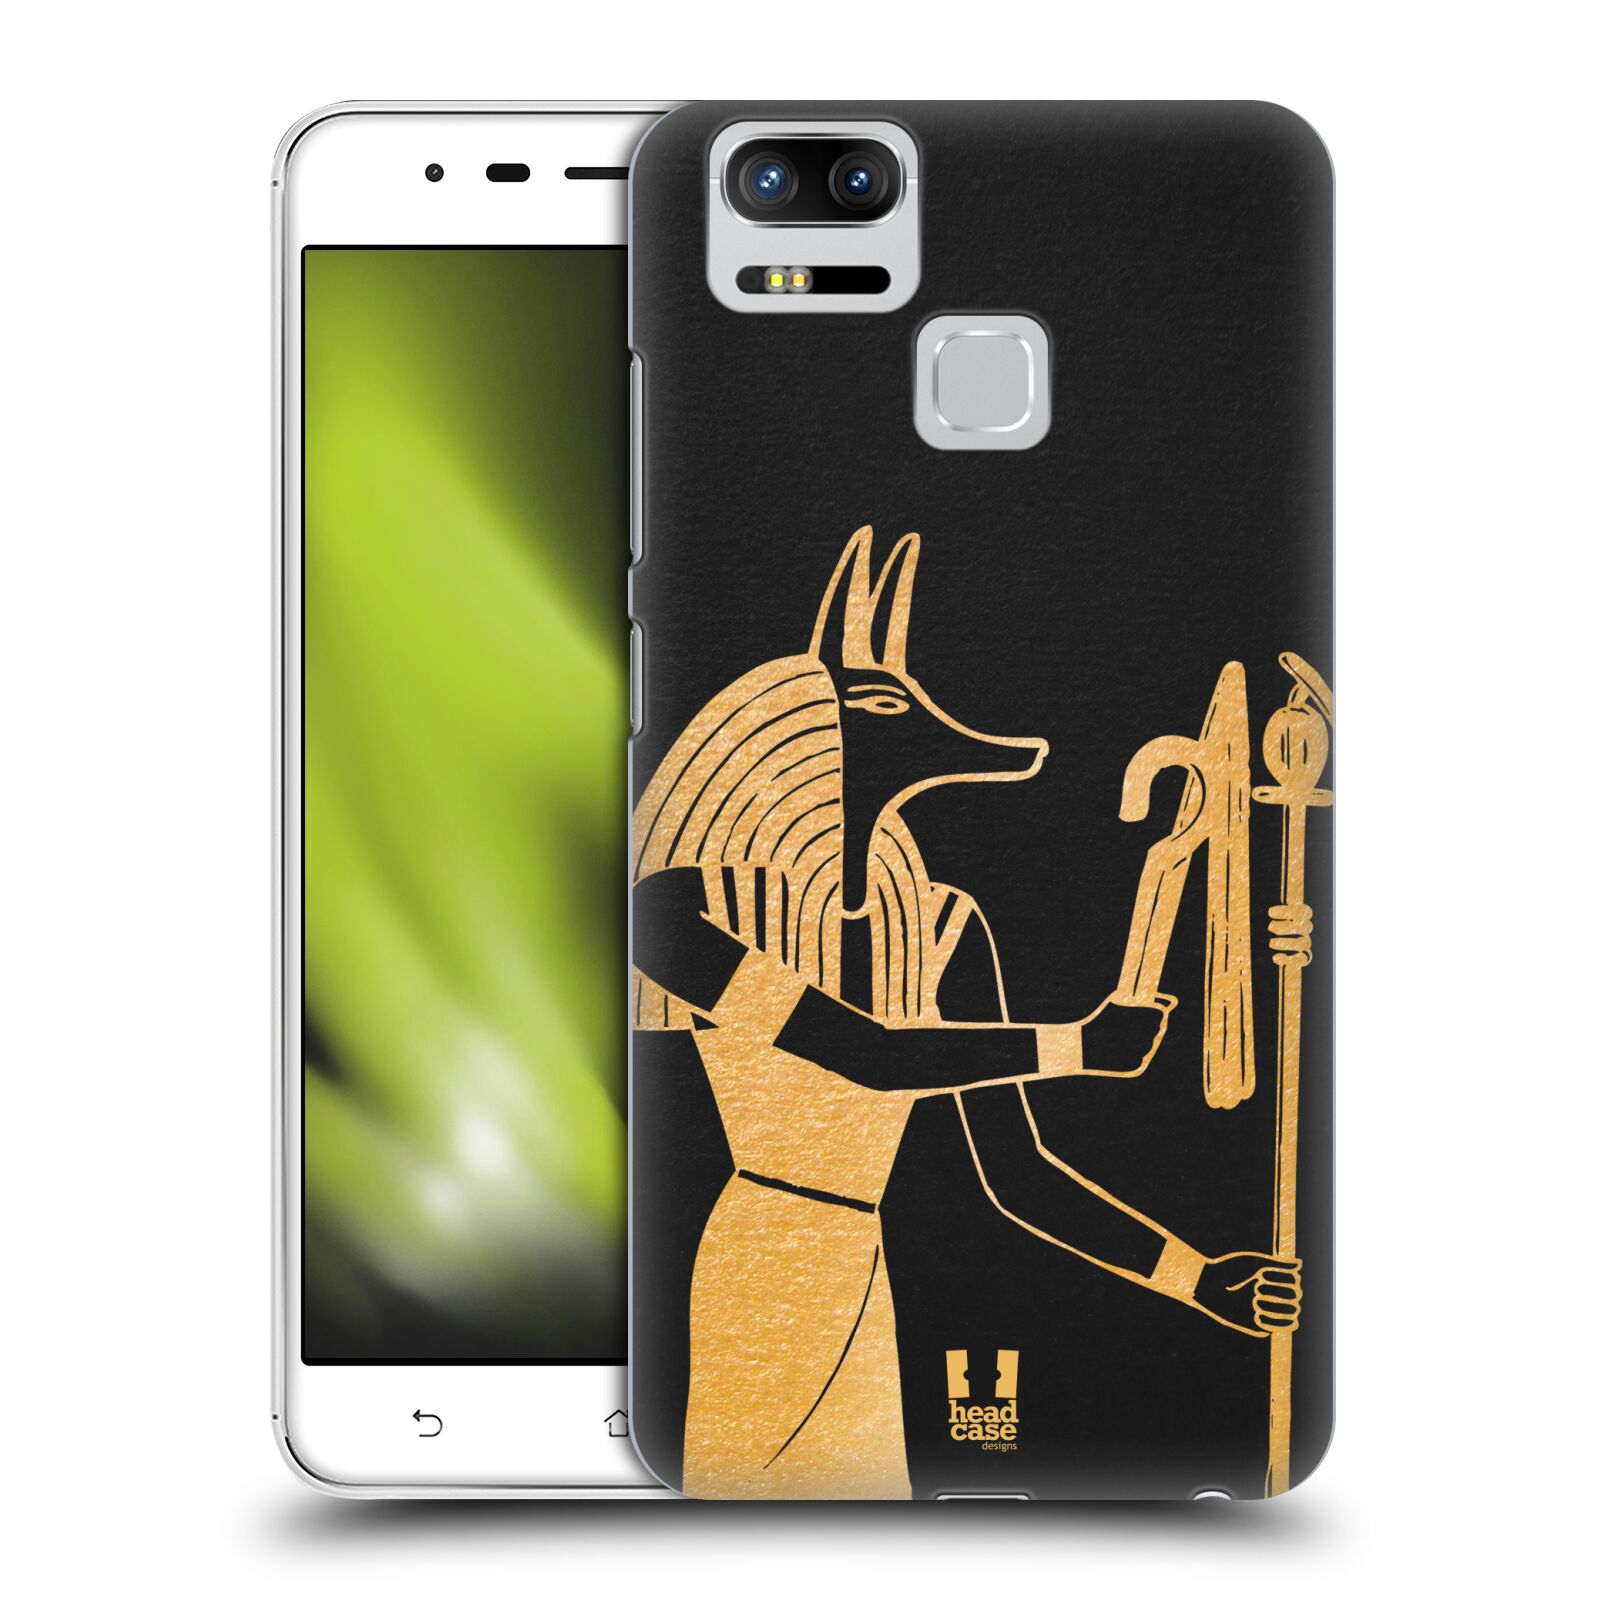 HEAD CASE plastový obal na mobil Asus Zenfone 3 Zoom ZE553KL vzor EGYPT zlatá a černá Anubis